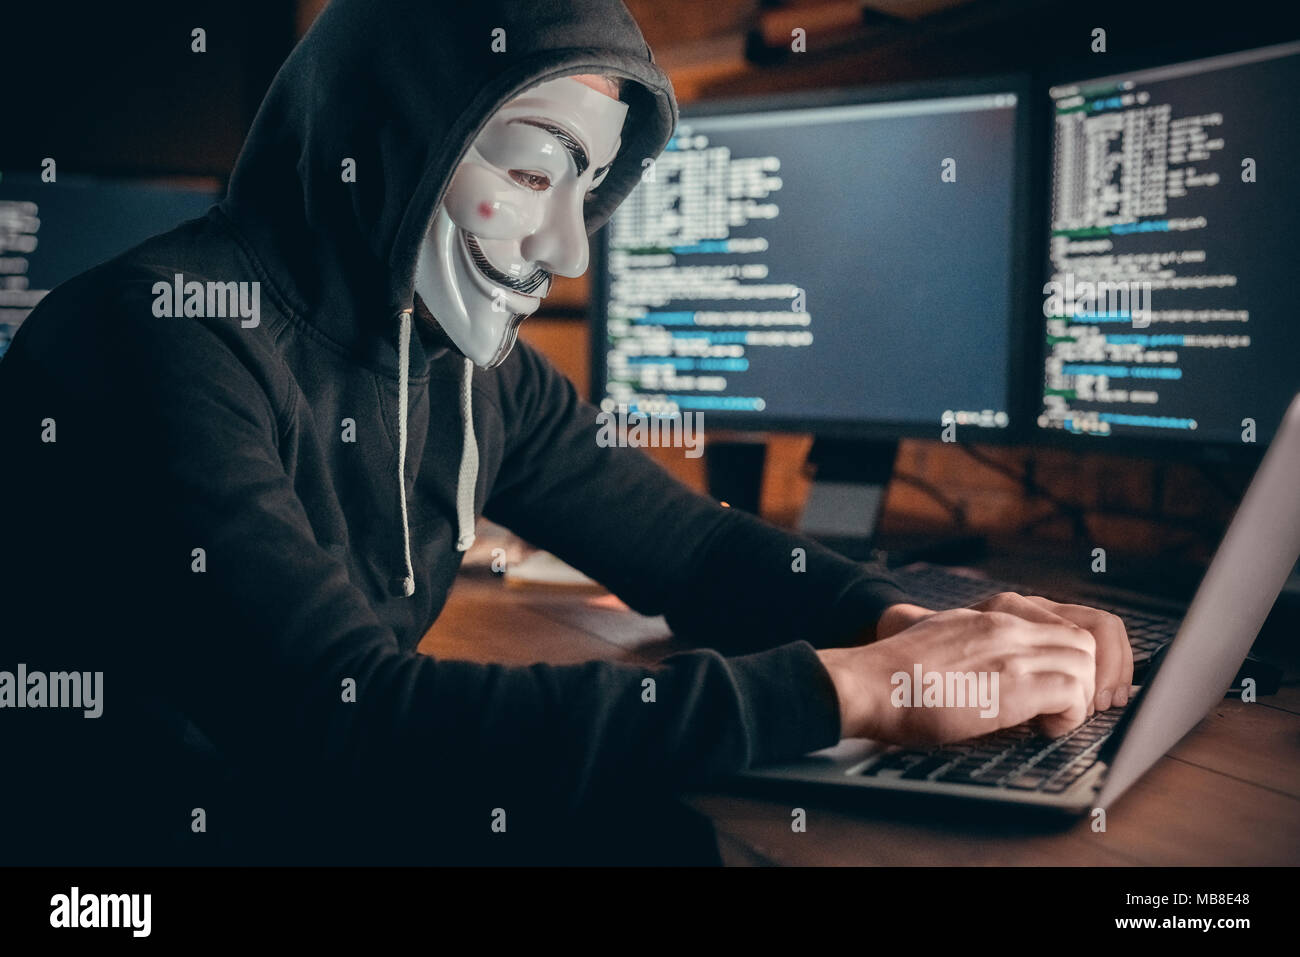 Jeune homme hacker financière au bureau assis à table système hacking typing on laptop Banque D'Images